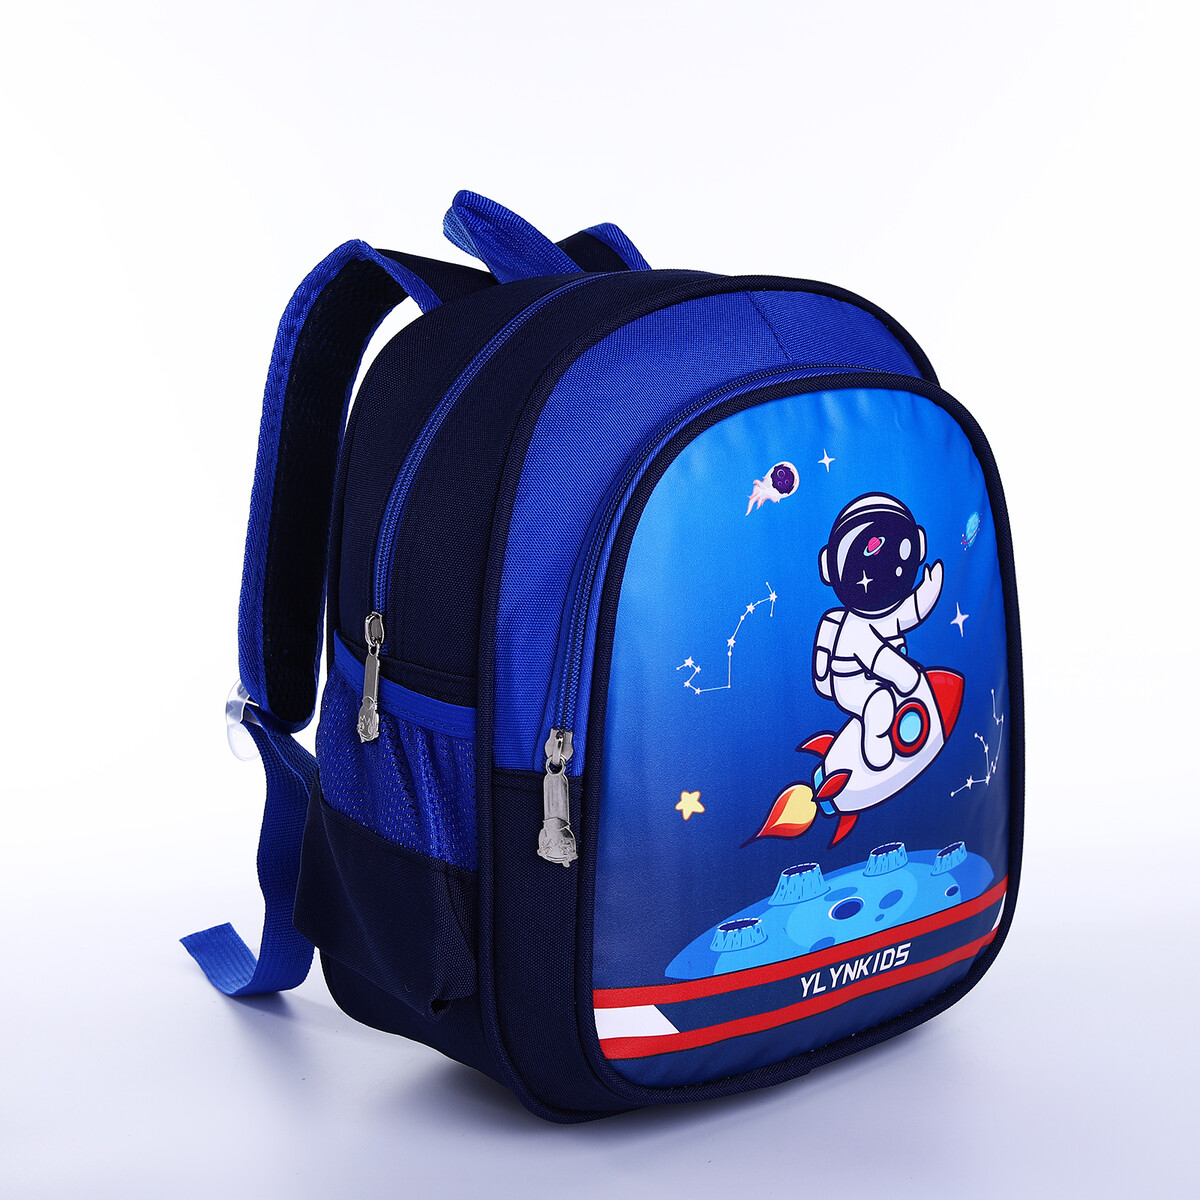 Рюкзак детский на молнии, 3 наружных кармана, цвет синий рюкзак туристический на молнии 4 наружных кармана синий